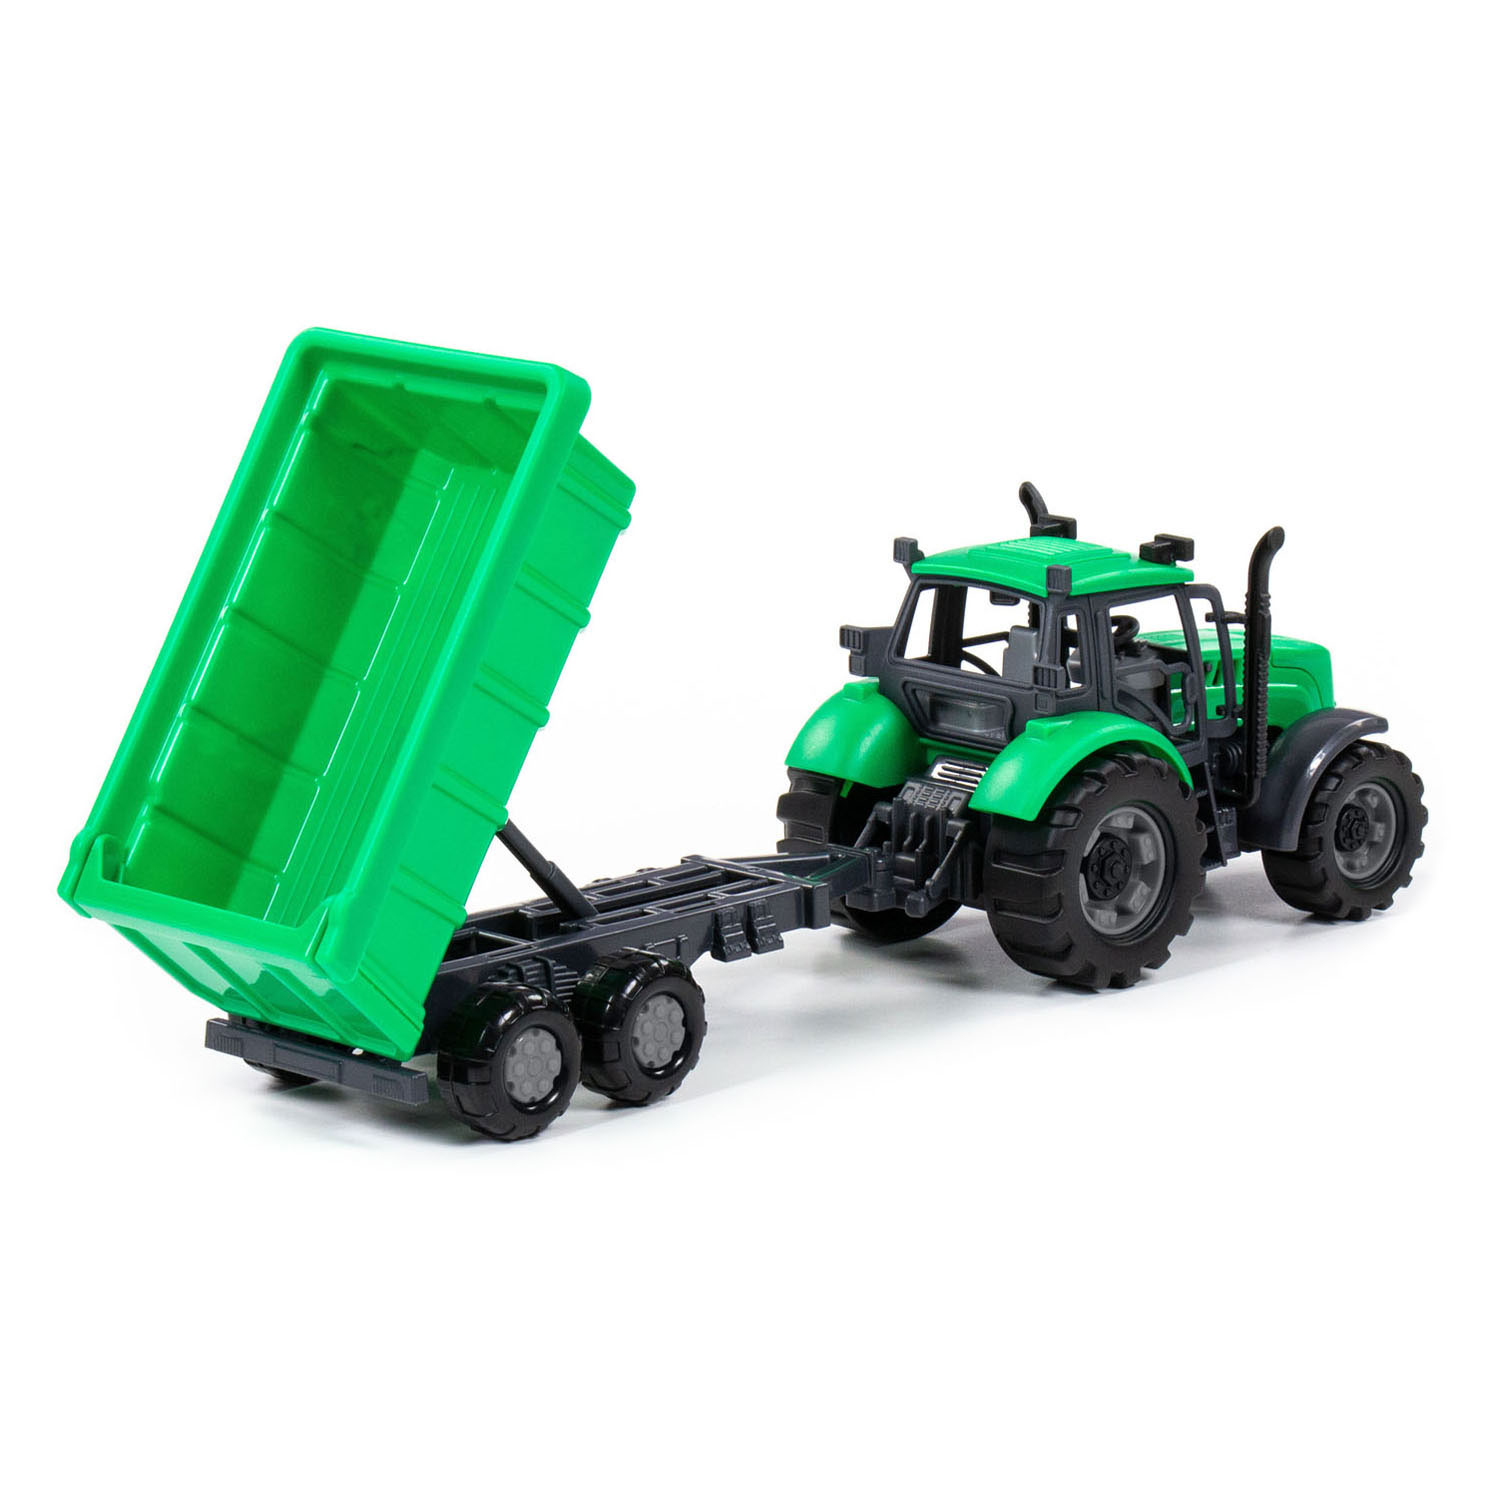 Tracteur Cavallino avec remorque benne vert, échelle 1:32